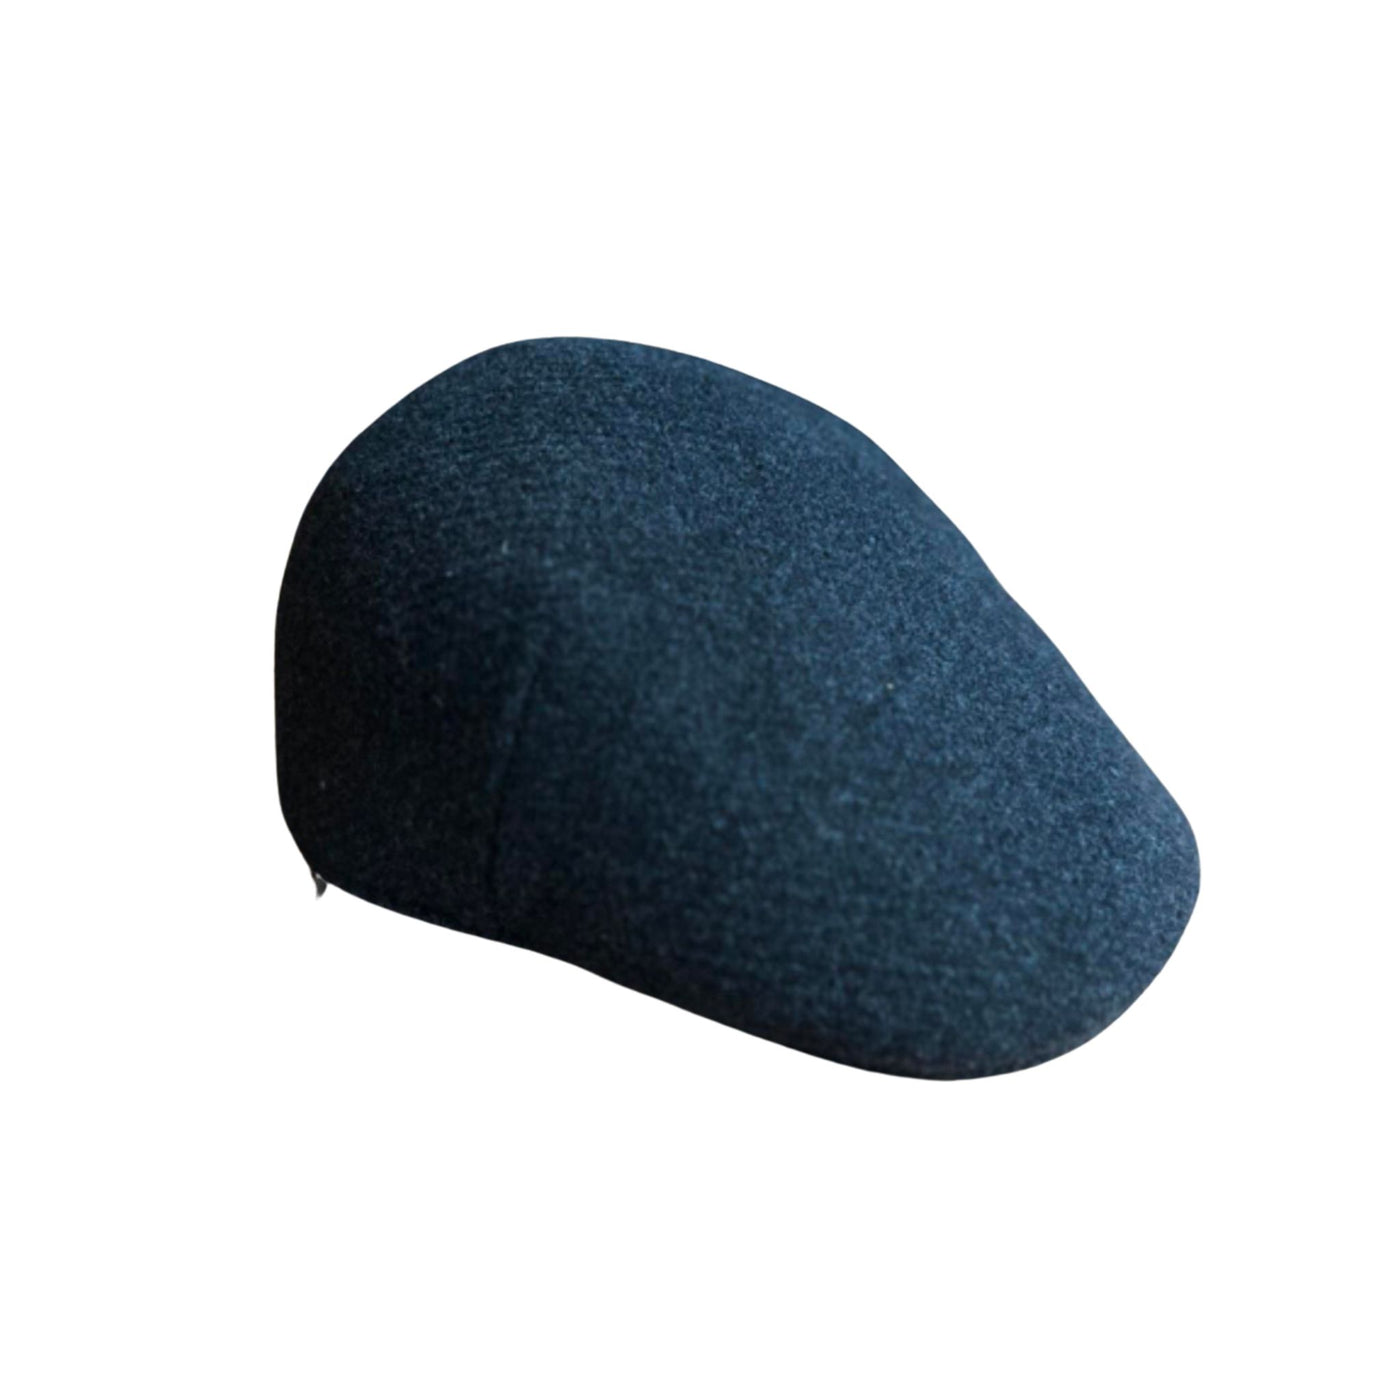 Men's cotton cap